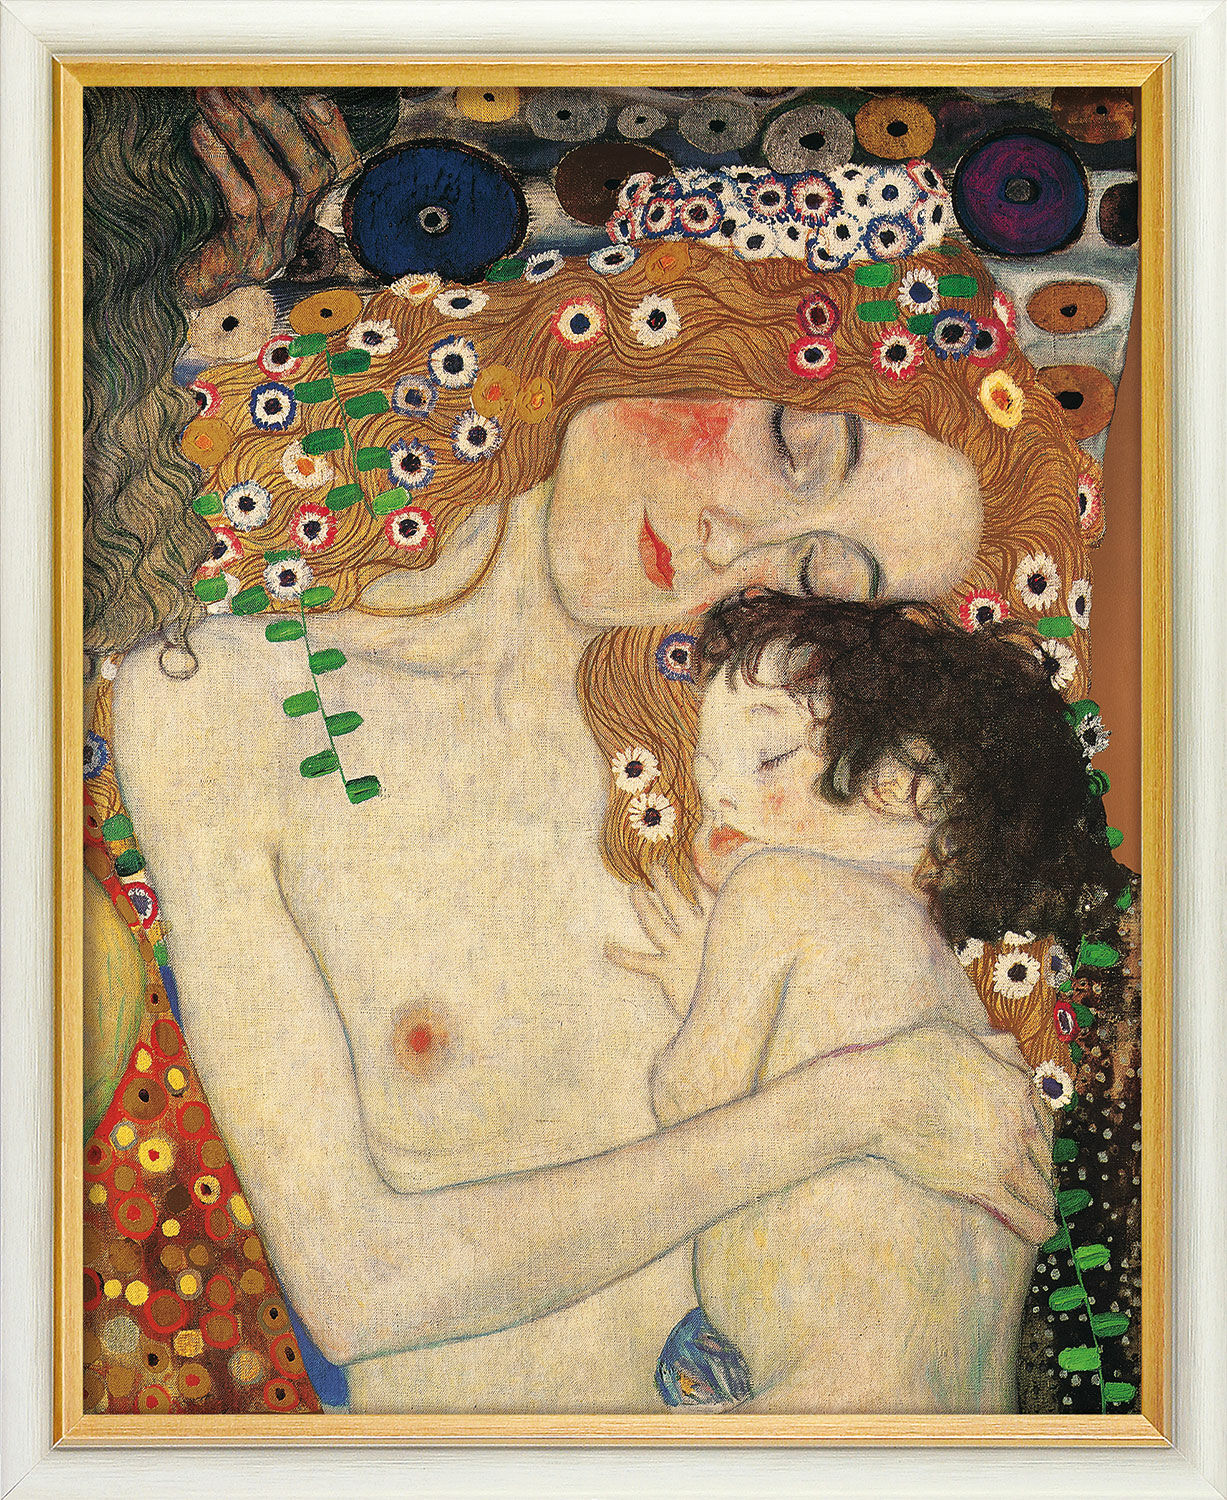 Beeld "Moeder en kind" (1905), ingelijst von Gustav Klimt